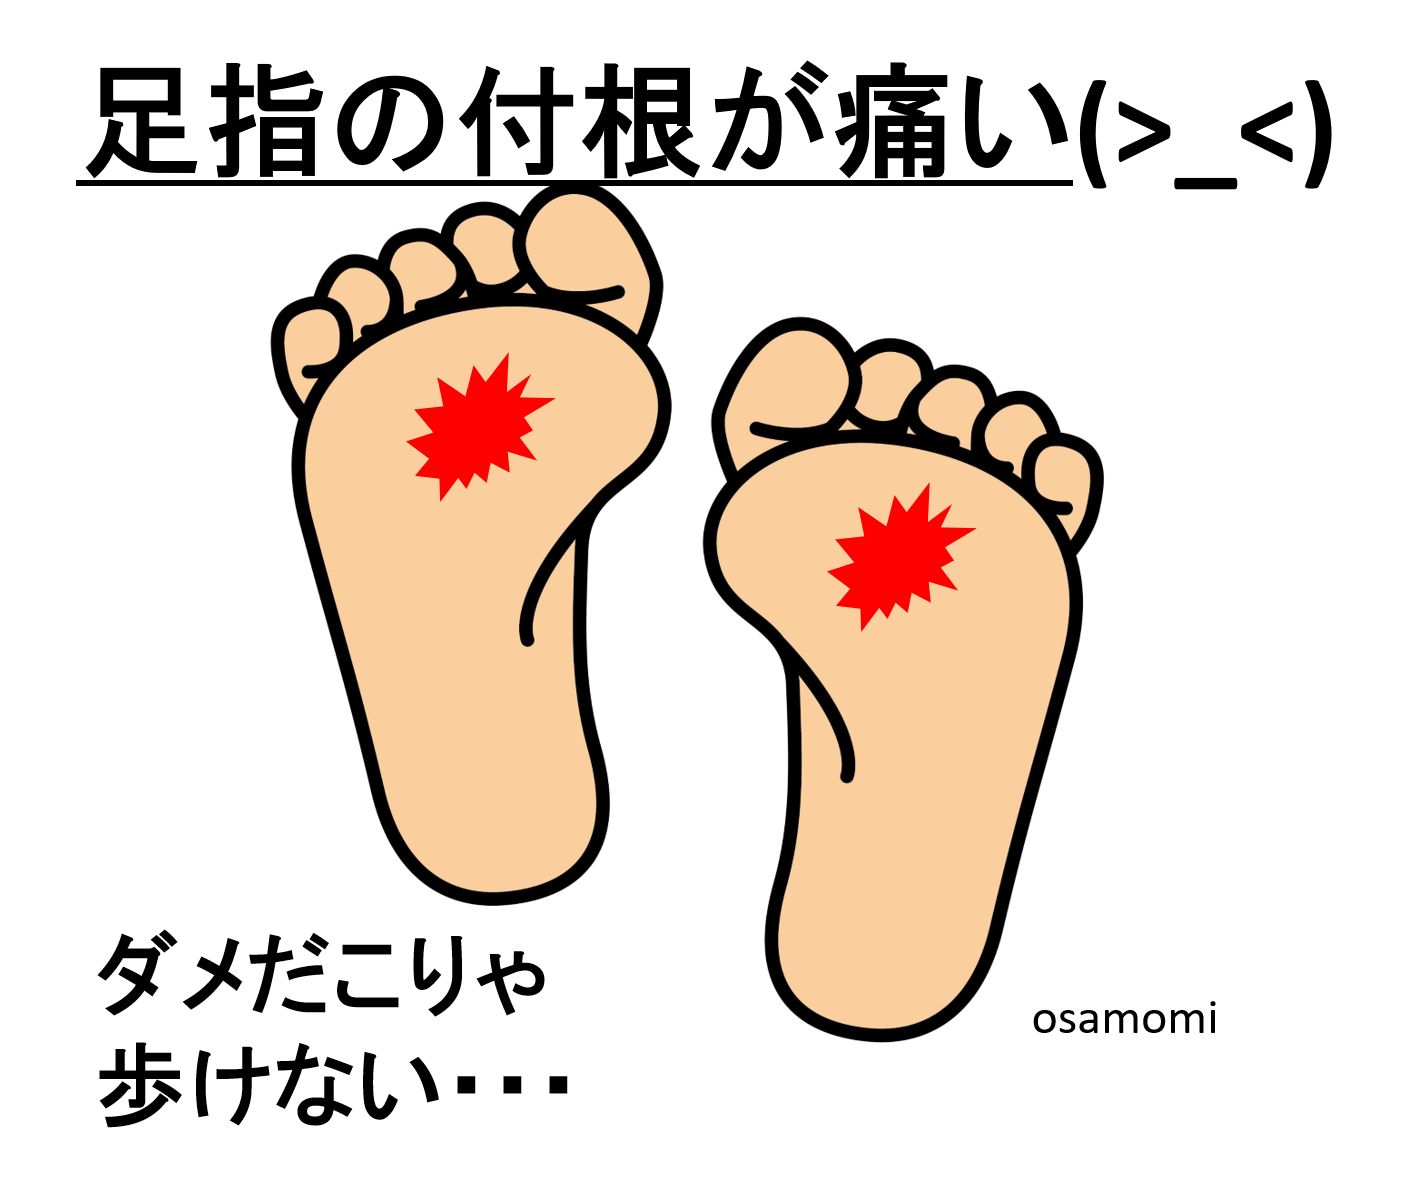 よく見ると足趾が曲がってる！足趾の屈曲変形の足は、中足骨頭部痛やタコが出来ます。昭島市のオサモミ整体院は、足ケアのプロフェッショナル